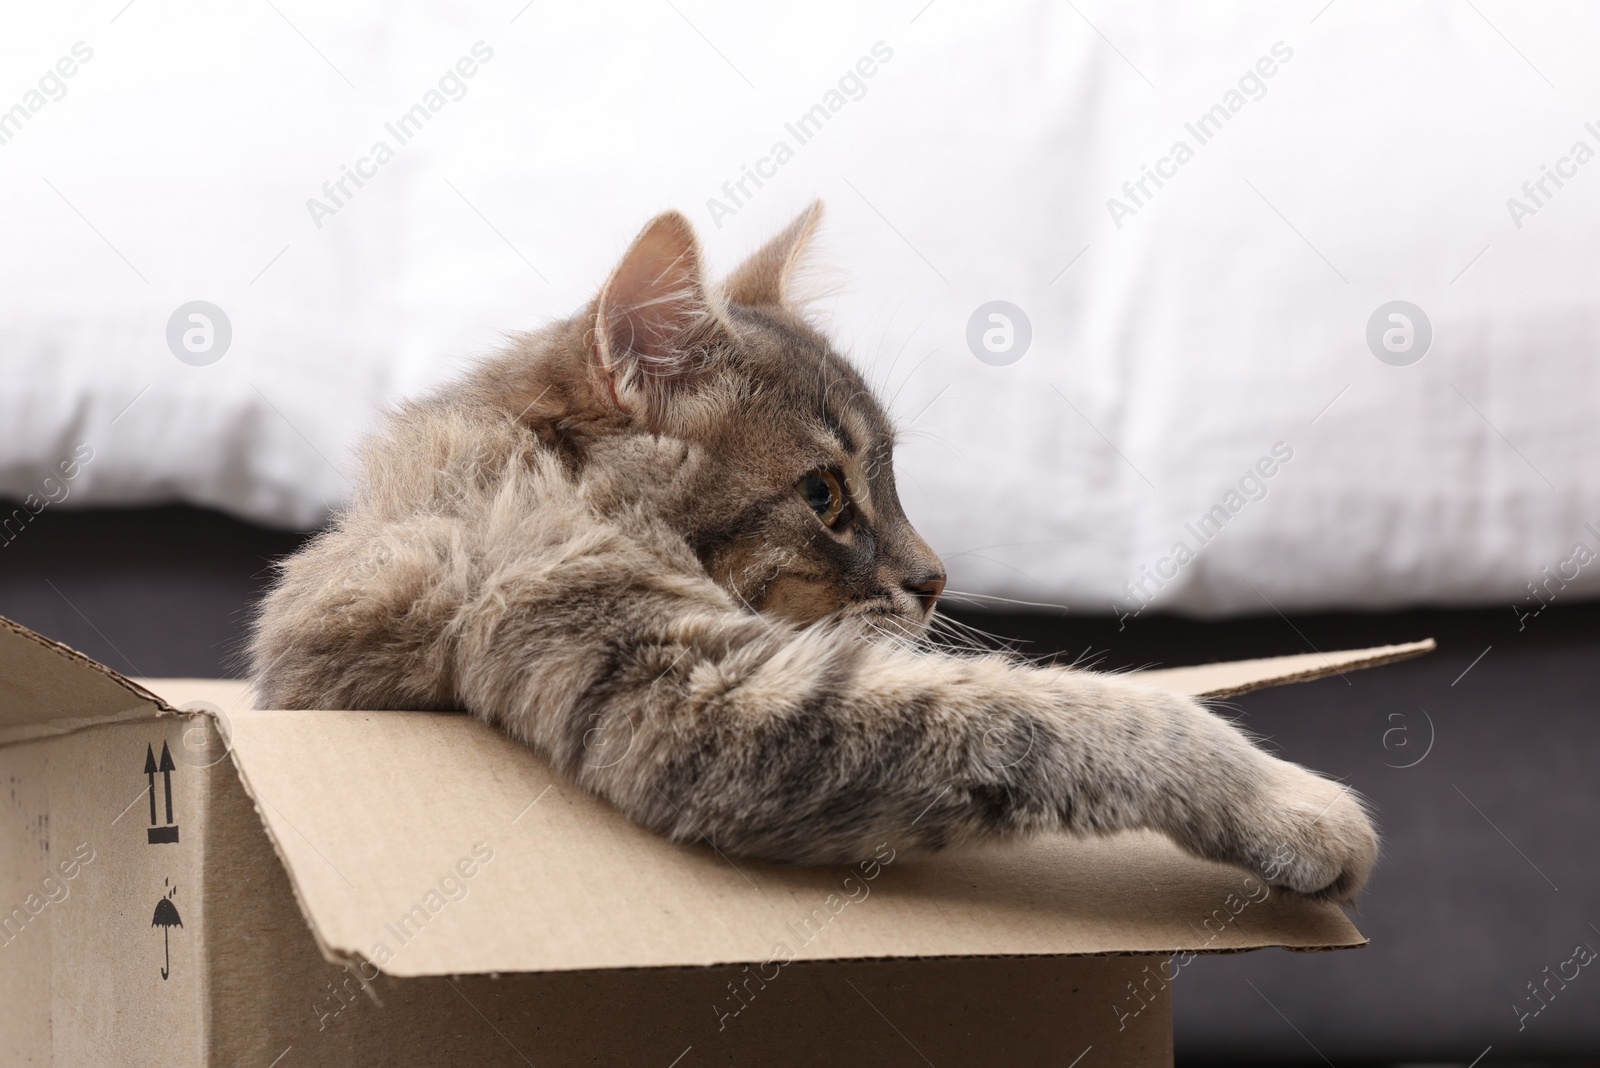 Photo of Cute fluffy cat in cardboard box at home, closeup